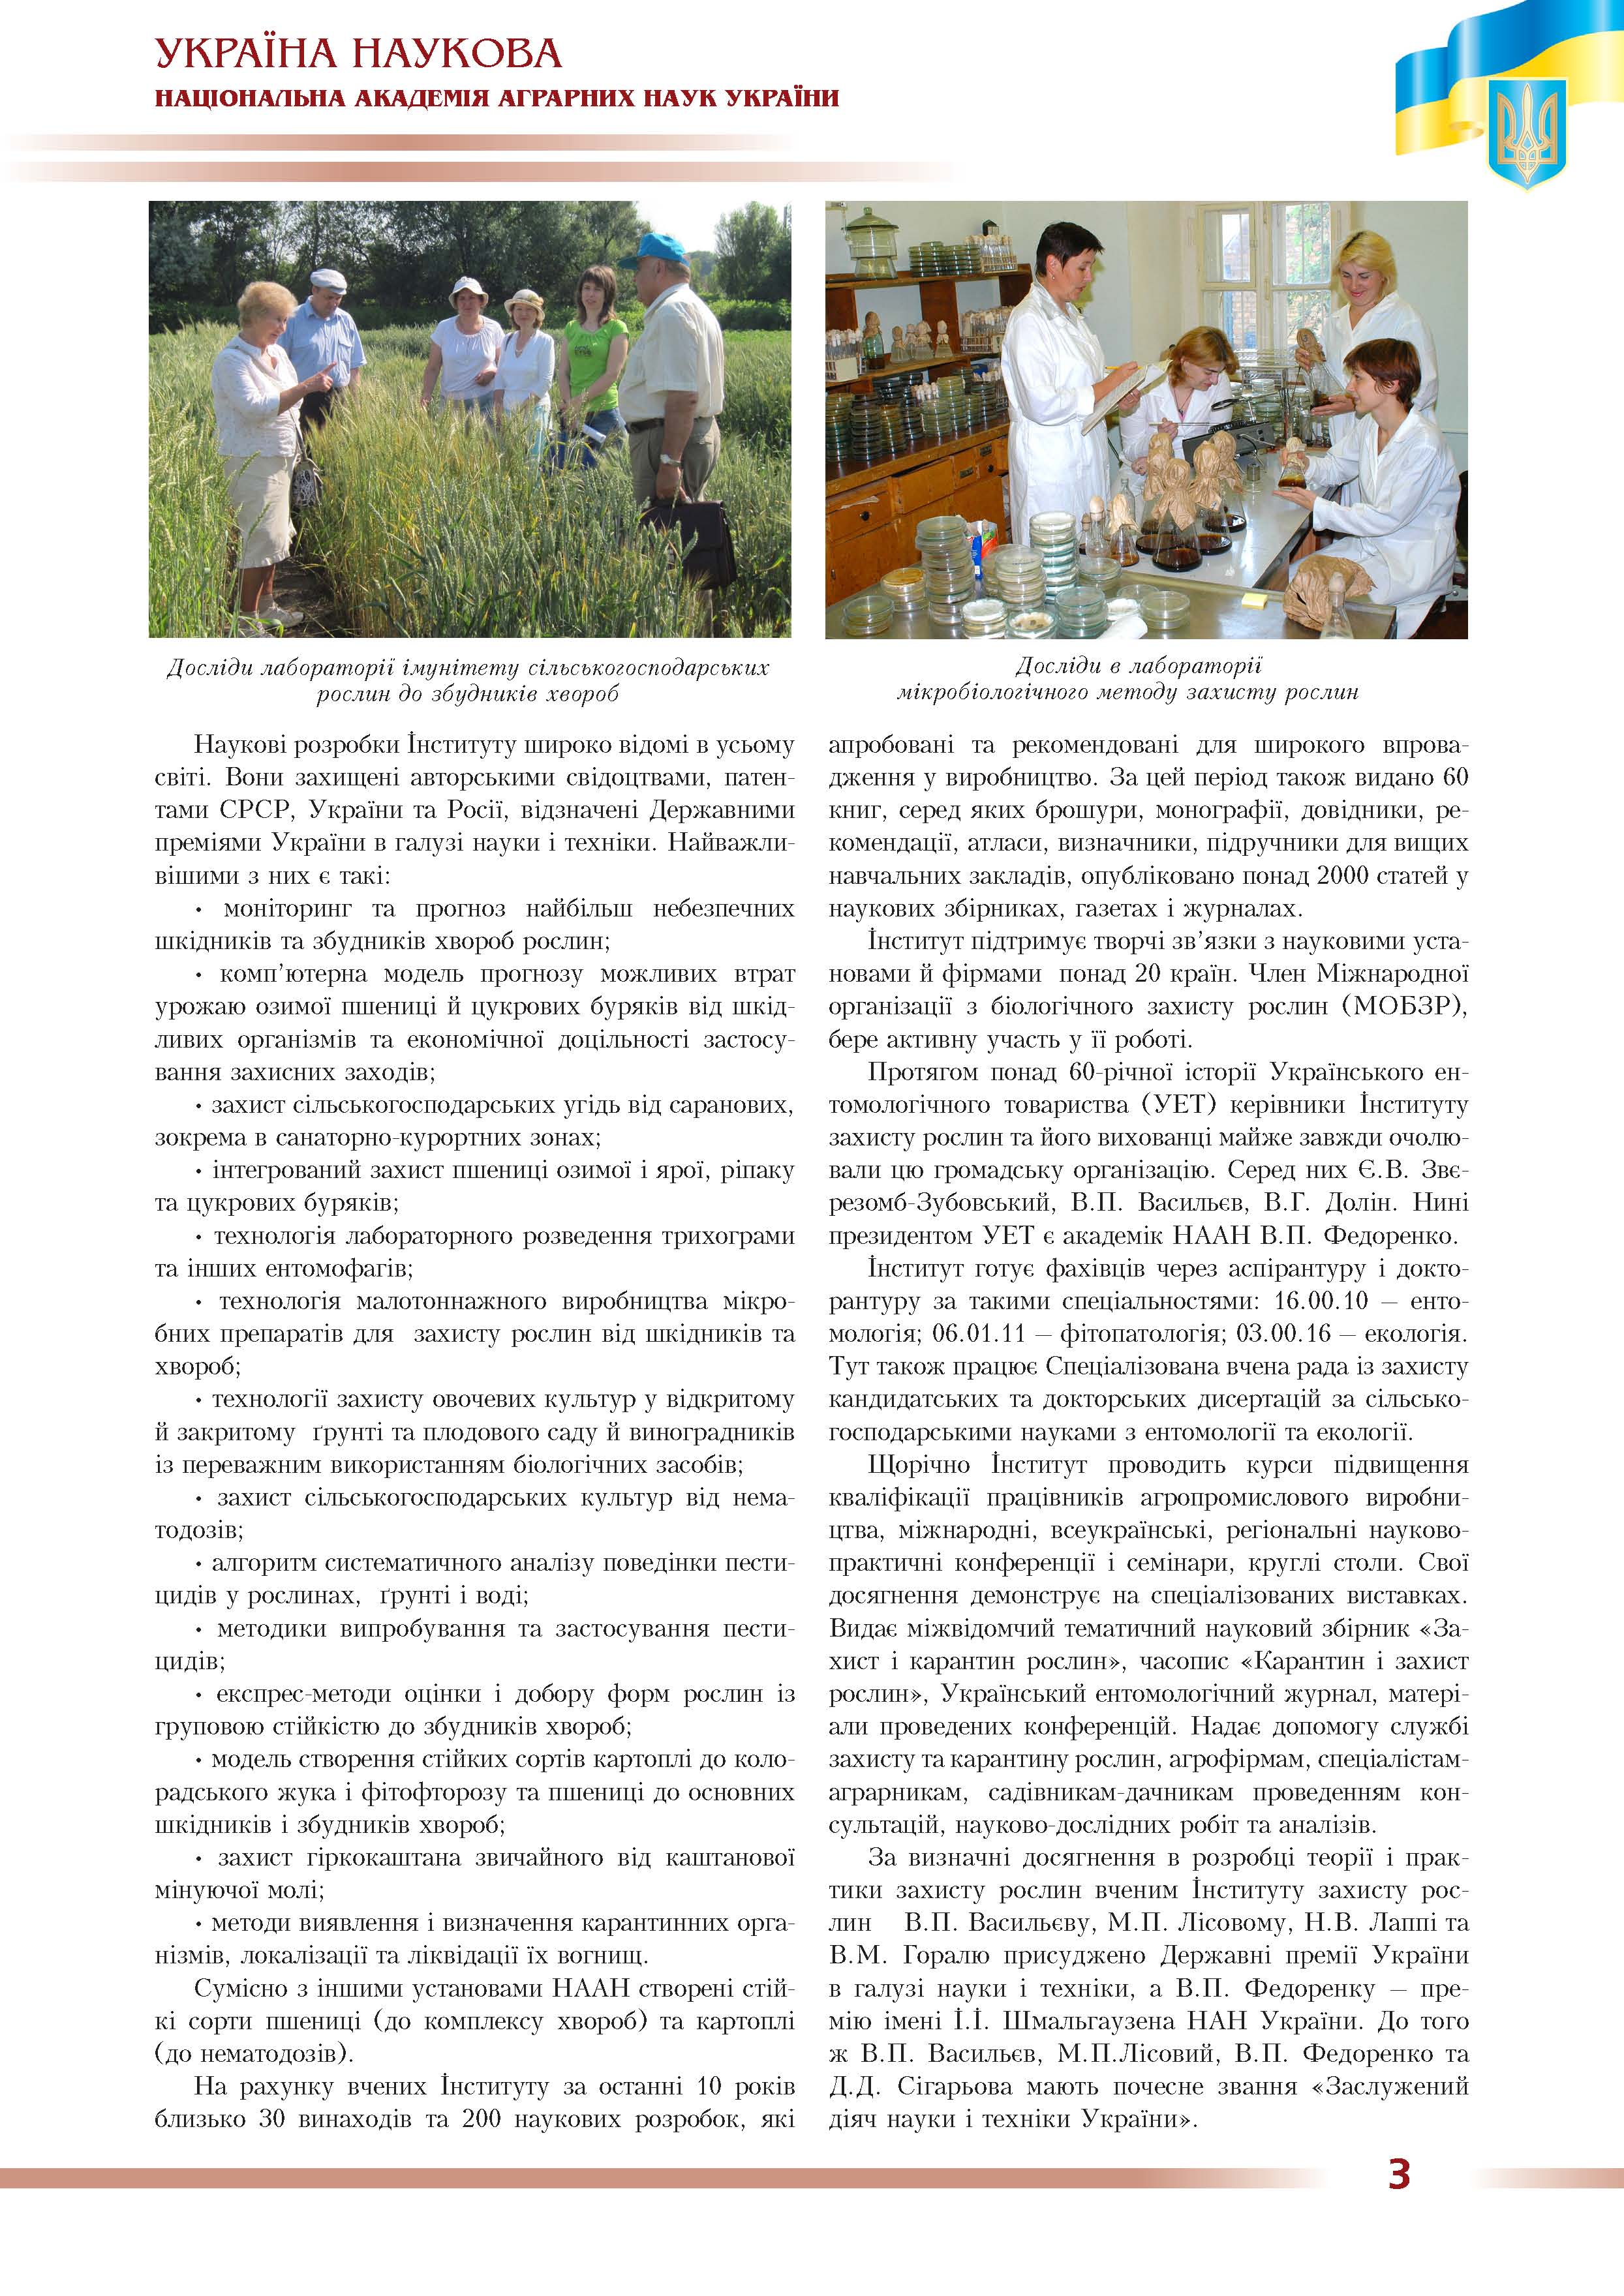 Інститут захисту рослин Національної академії аграних наук України